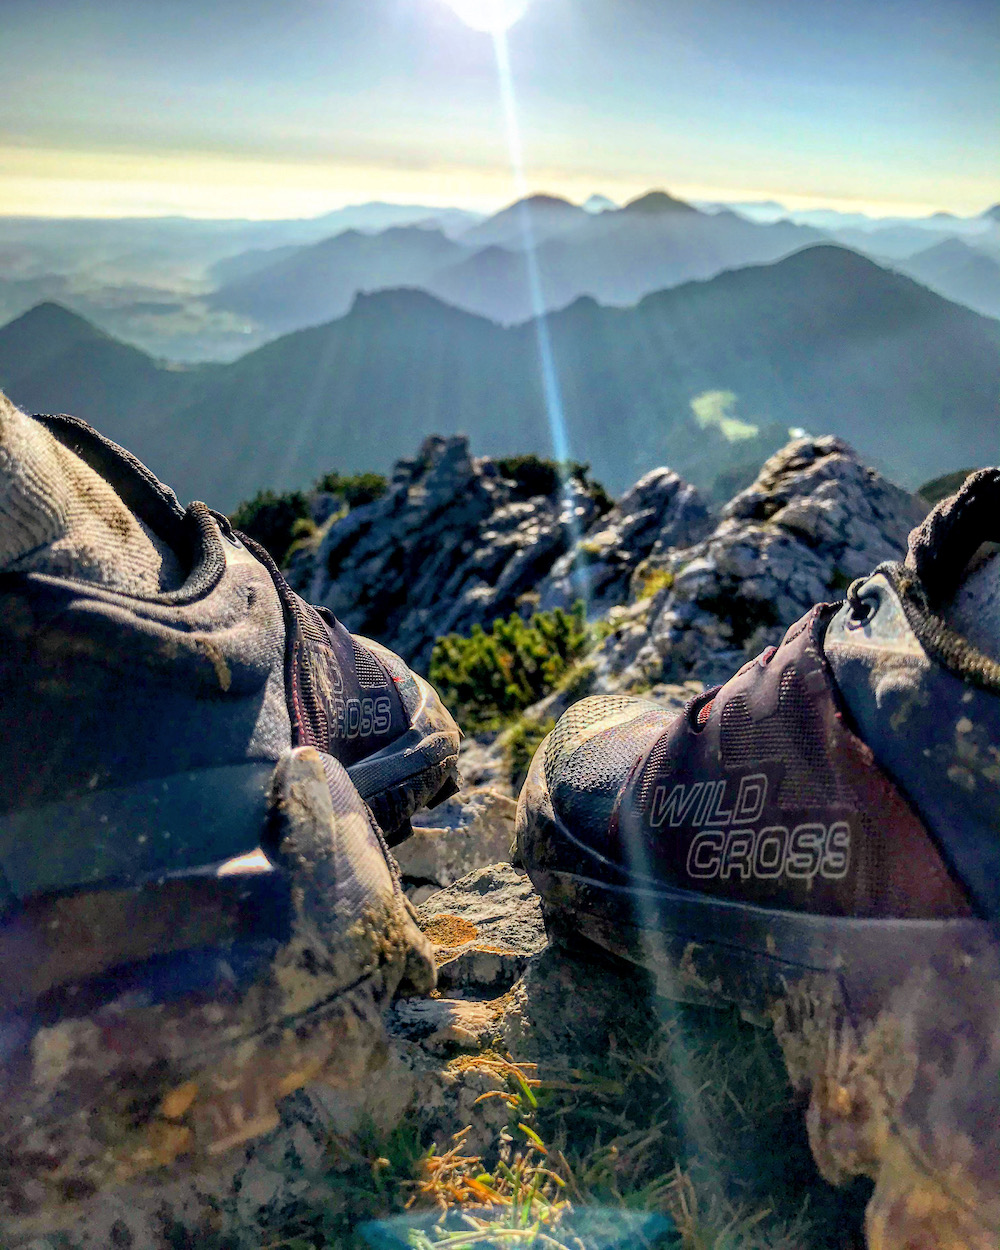 Testbericht – Salomon WILDCROSS: Leichter Allrounder-Trailschuh mit genialem Grip für knackige Bergtouren